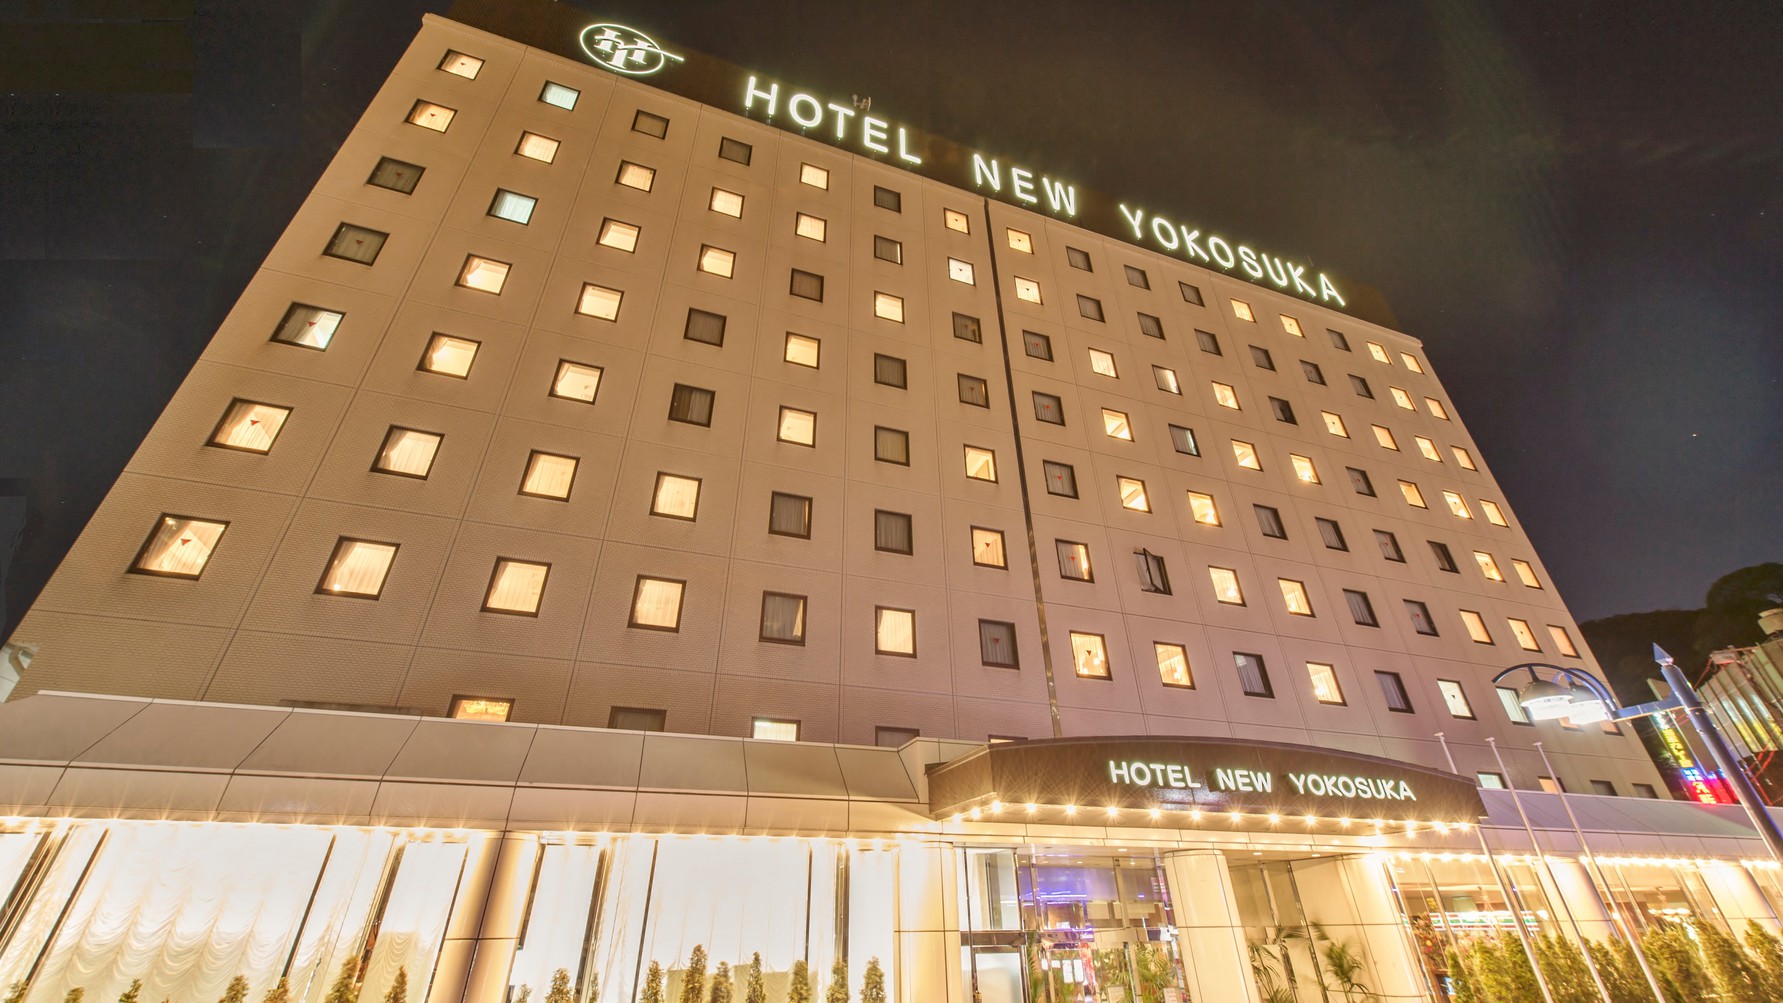 三浦半島 横須賀 三浦 ホテル 宿泊施設の予約情報 格安ホテル比較ネット